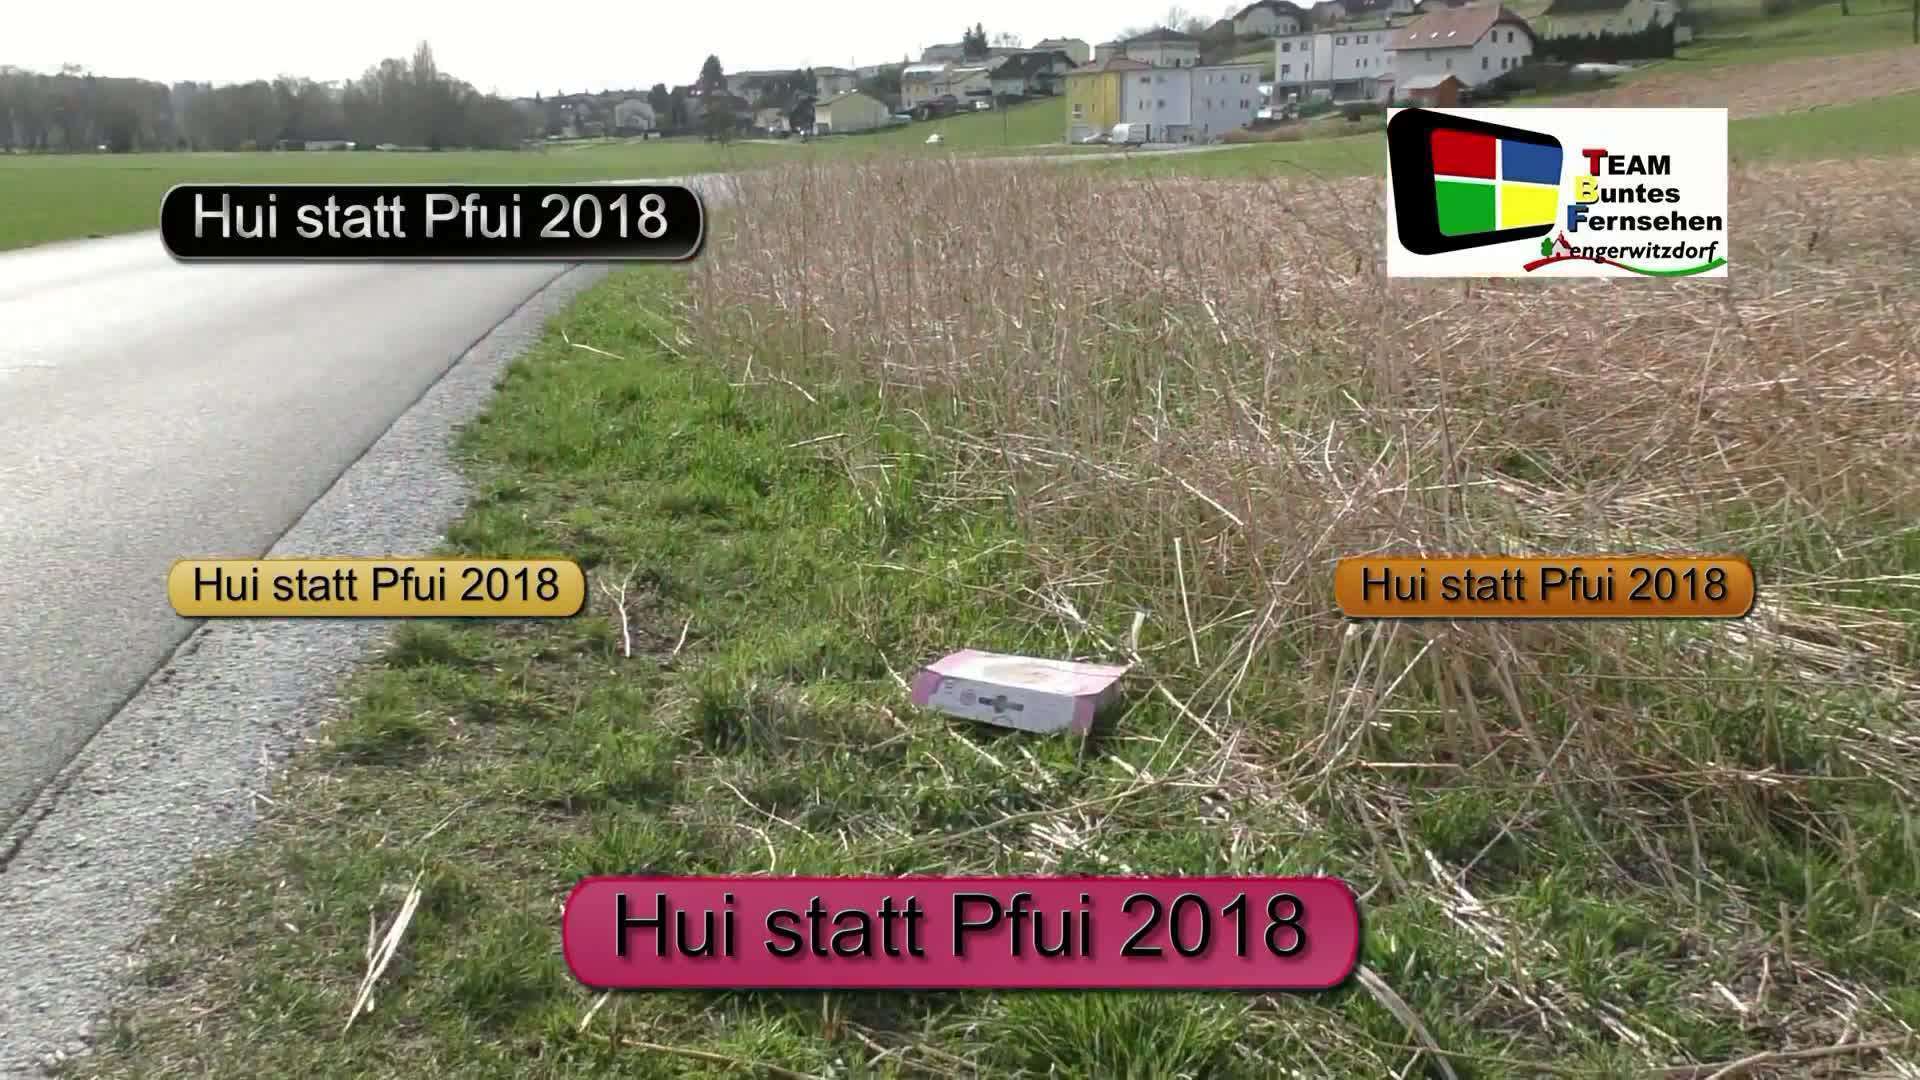 Hui statt Pfui 2018 eine Flurreinigungsaktion der Gemeinden